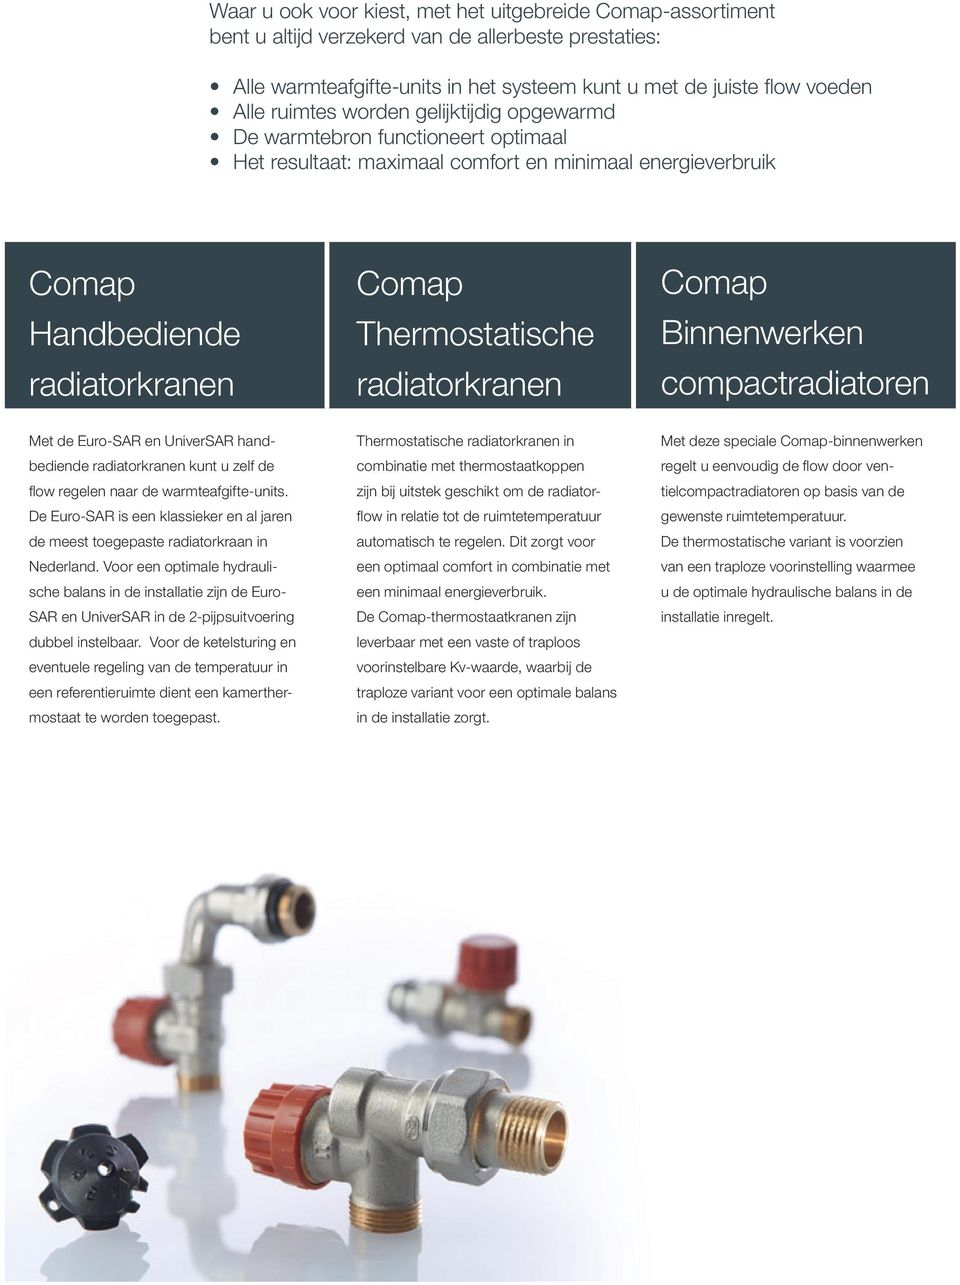 radiatorkranen Comap Binnenwerken compactradiatoren Met de Euro-SAR en UniverSAR handbediende radiatorkranen kunt u zelf de flow regelen naar de warmteafgifte-units.